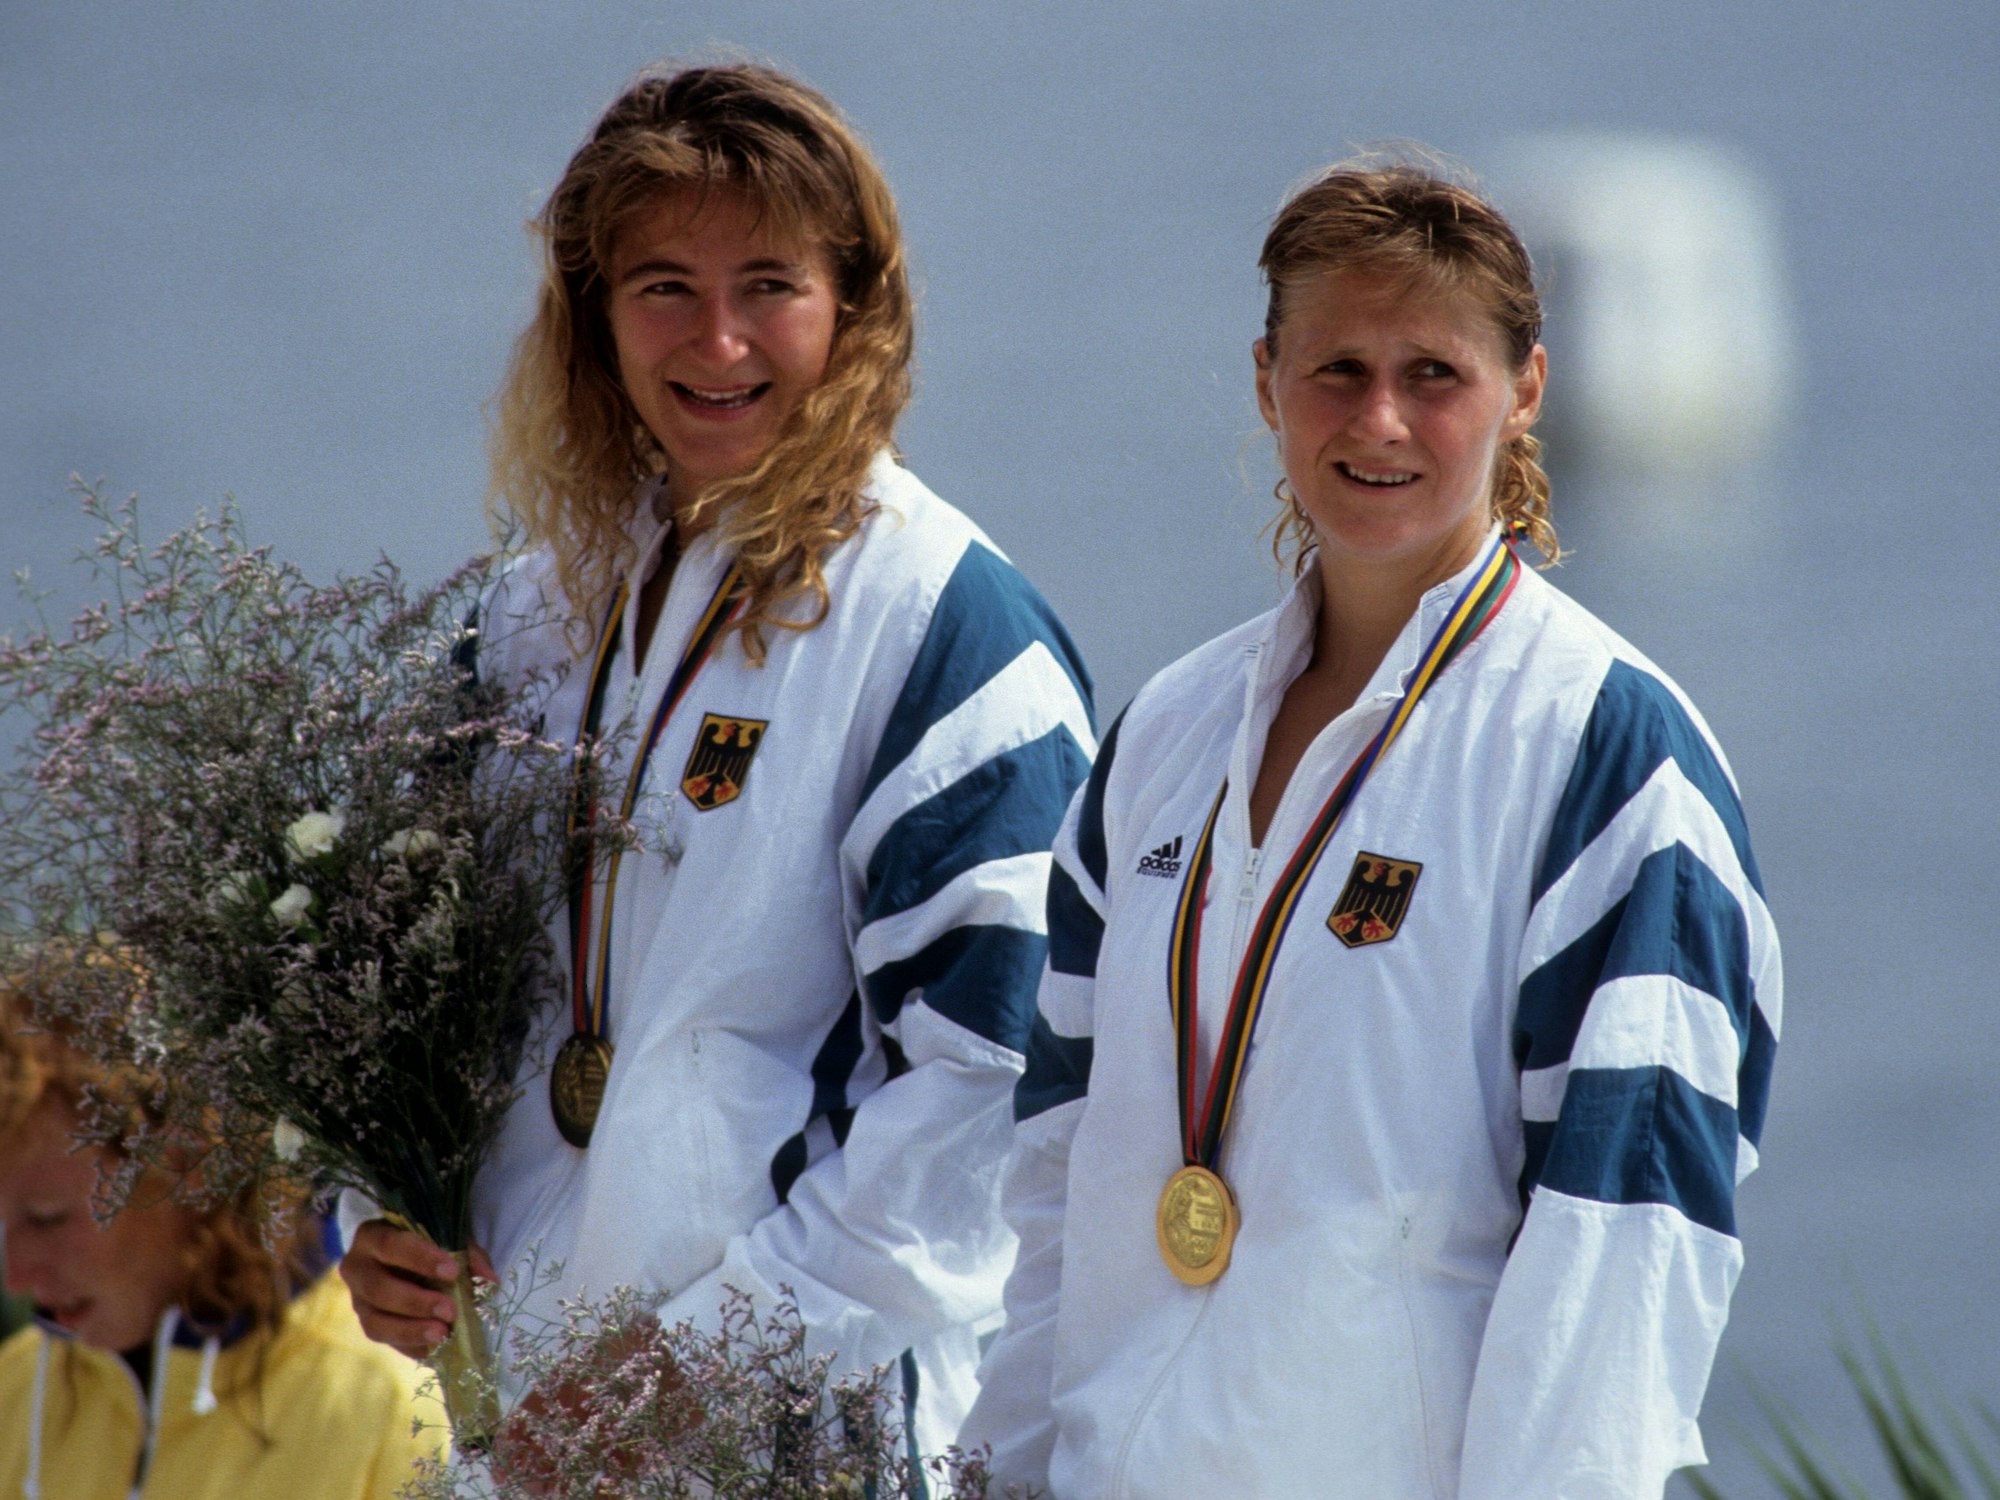 Ramon Portwich und Anke von Seck bei der Siegerehrung nach ihrem Olympiasieg 1992.